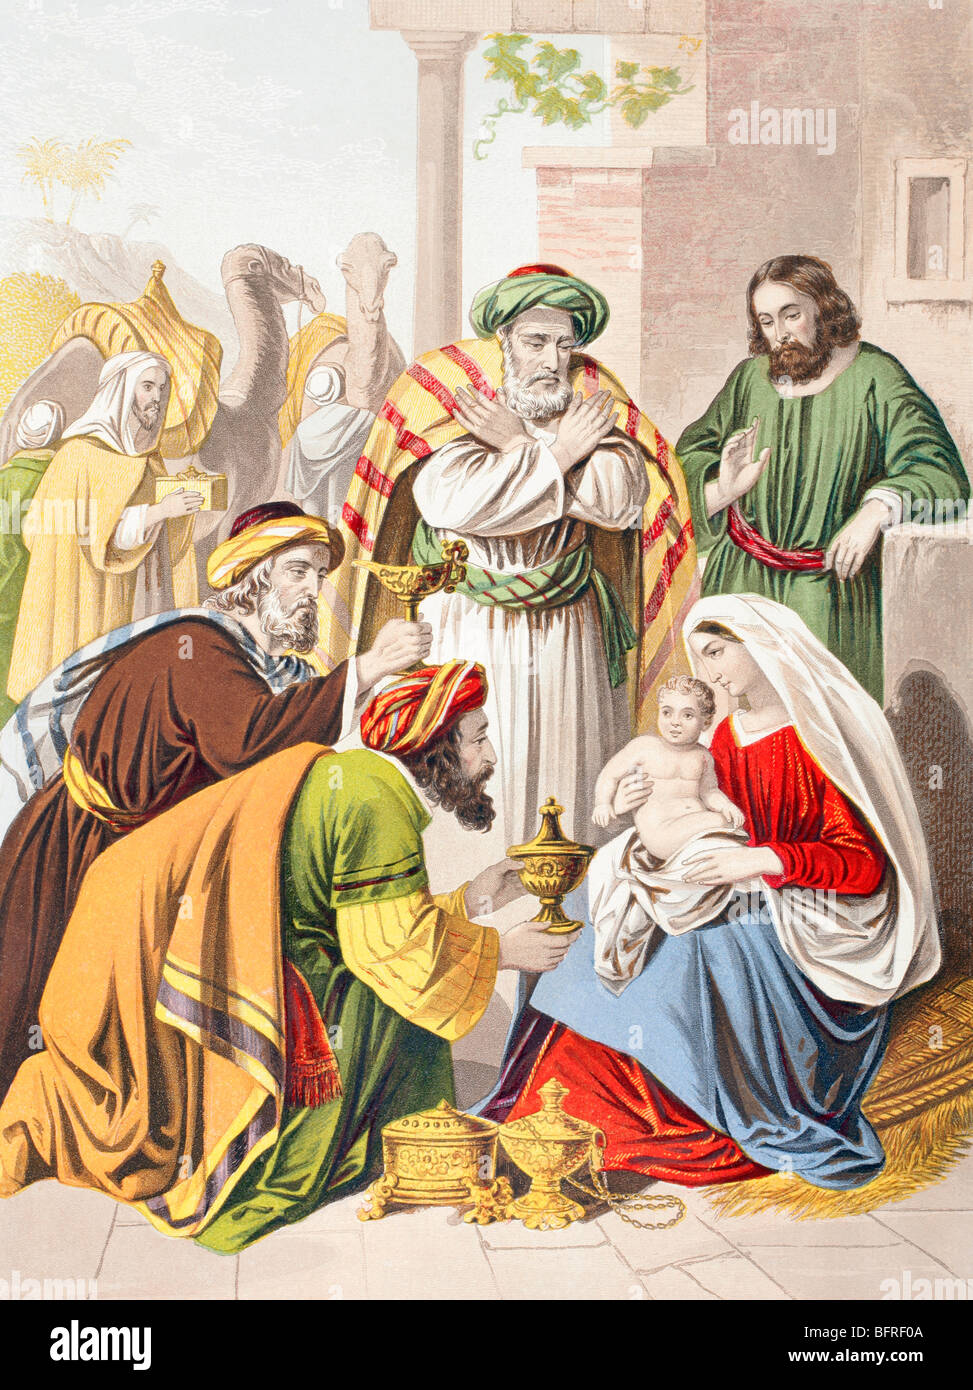 Scène de la nativité. Les trois sages avec la Sainte Famille. L'un présente un cadeau à l'enfant Jésus. Banque D'Images